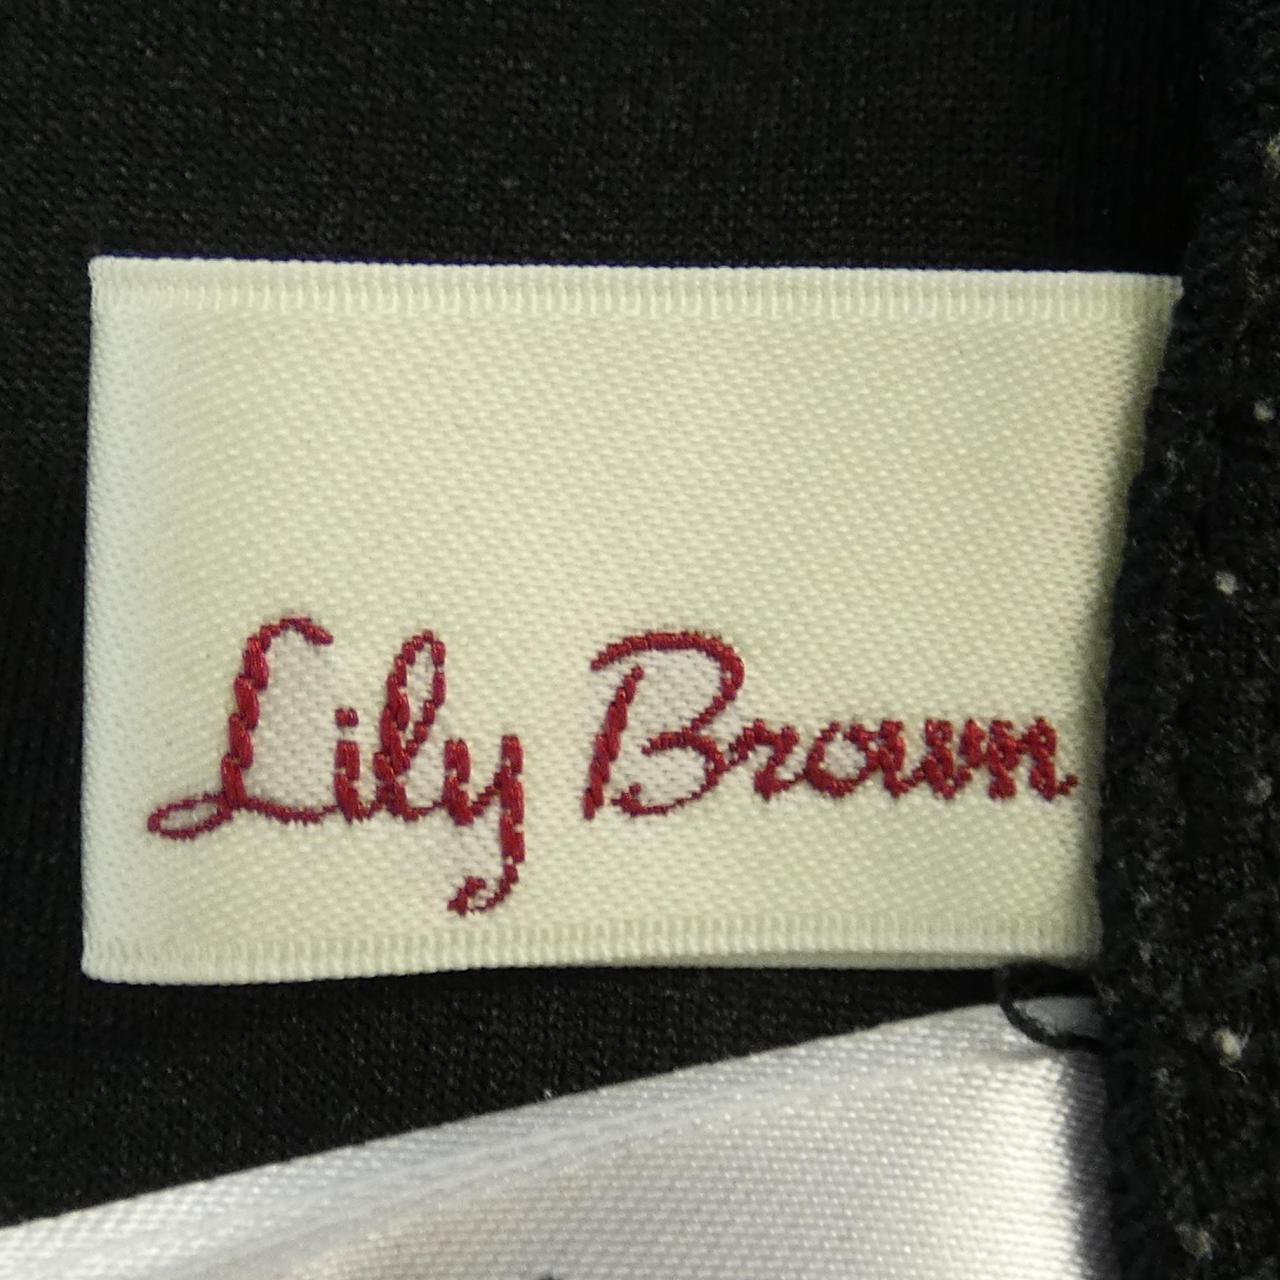 リリーブラウン Lily Brown ワンピース